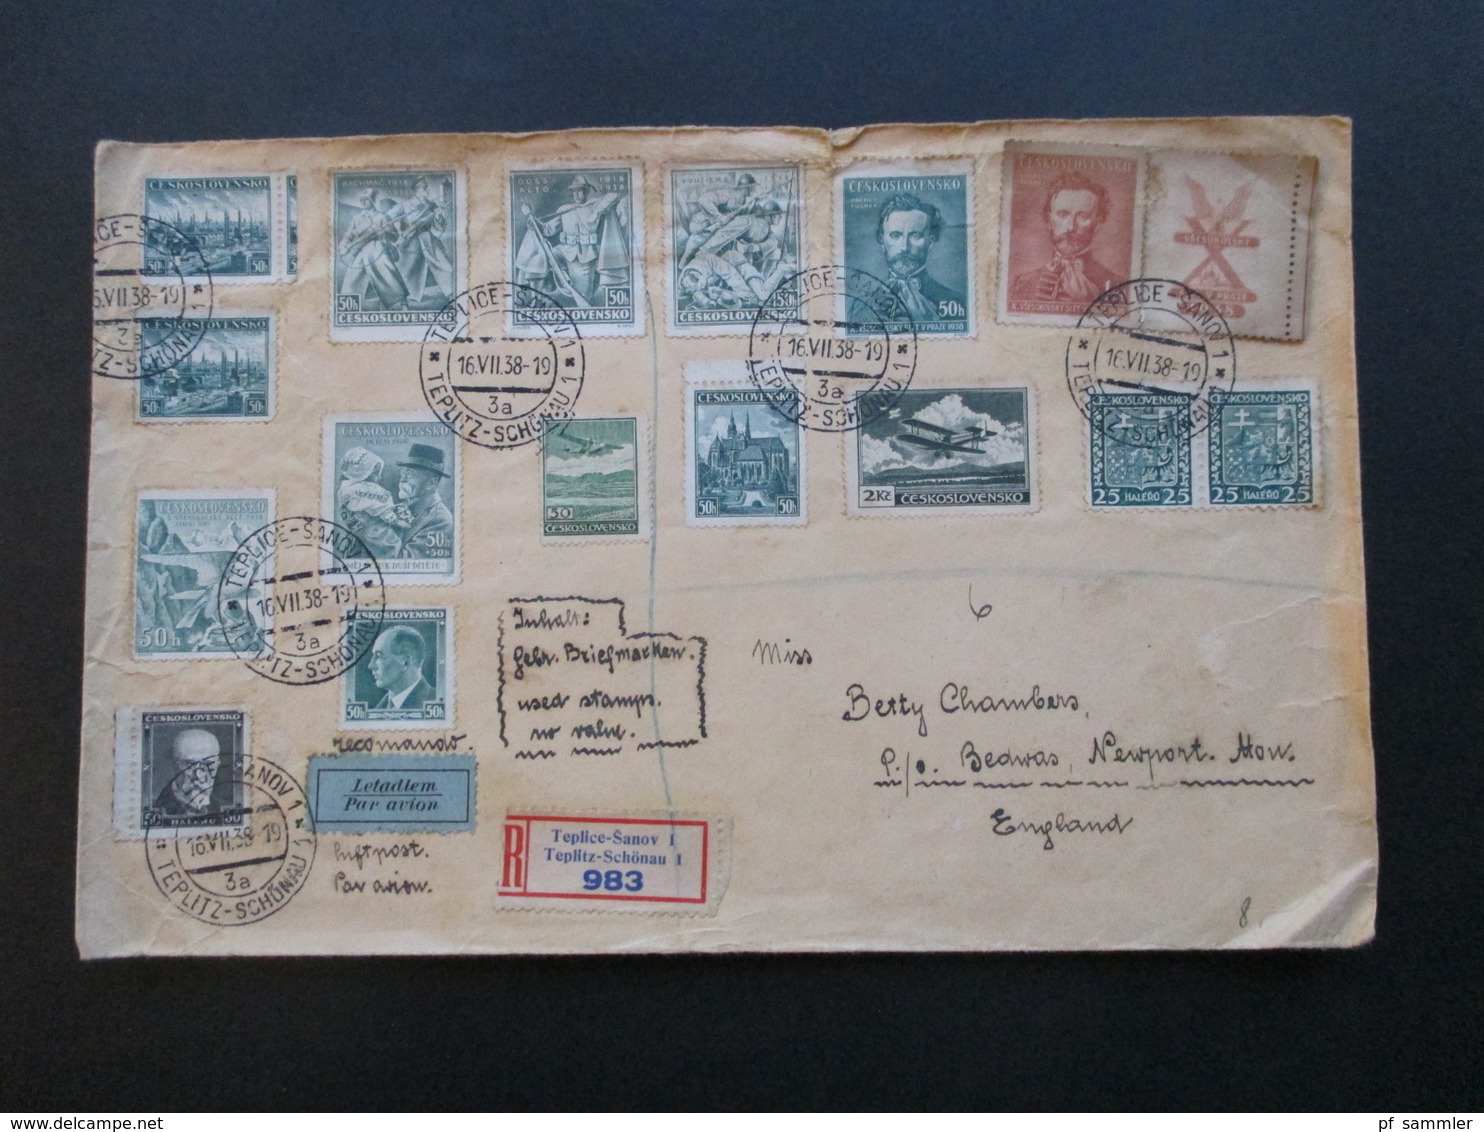 CSSR 1938 Beleg Mit 16 Marken Per Luftpost Letadlem Einschreiben Teplice Sanov 1 Nach Newport England - Lettres & Documents